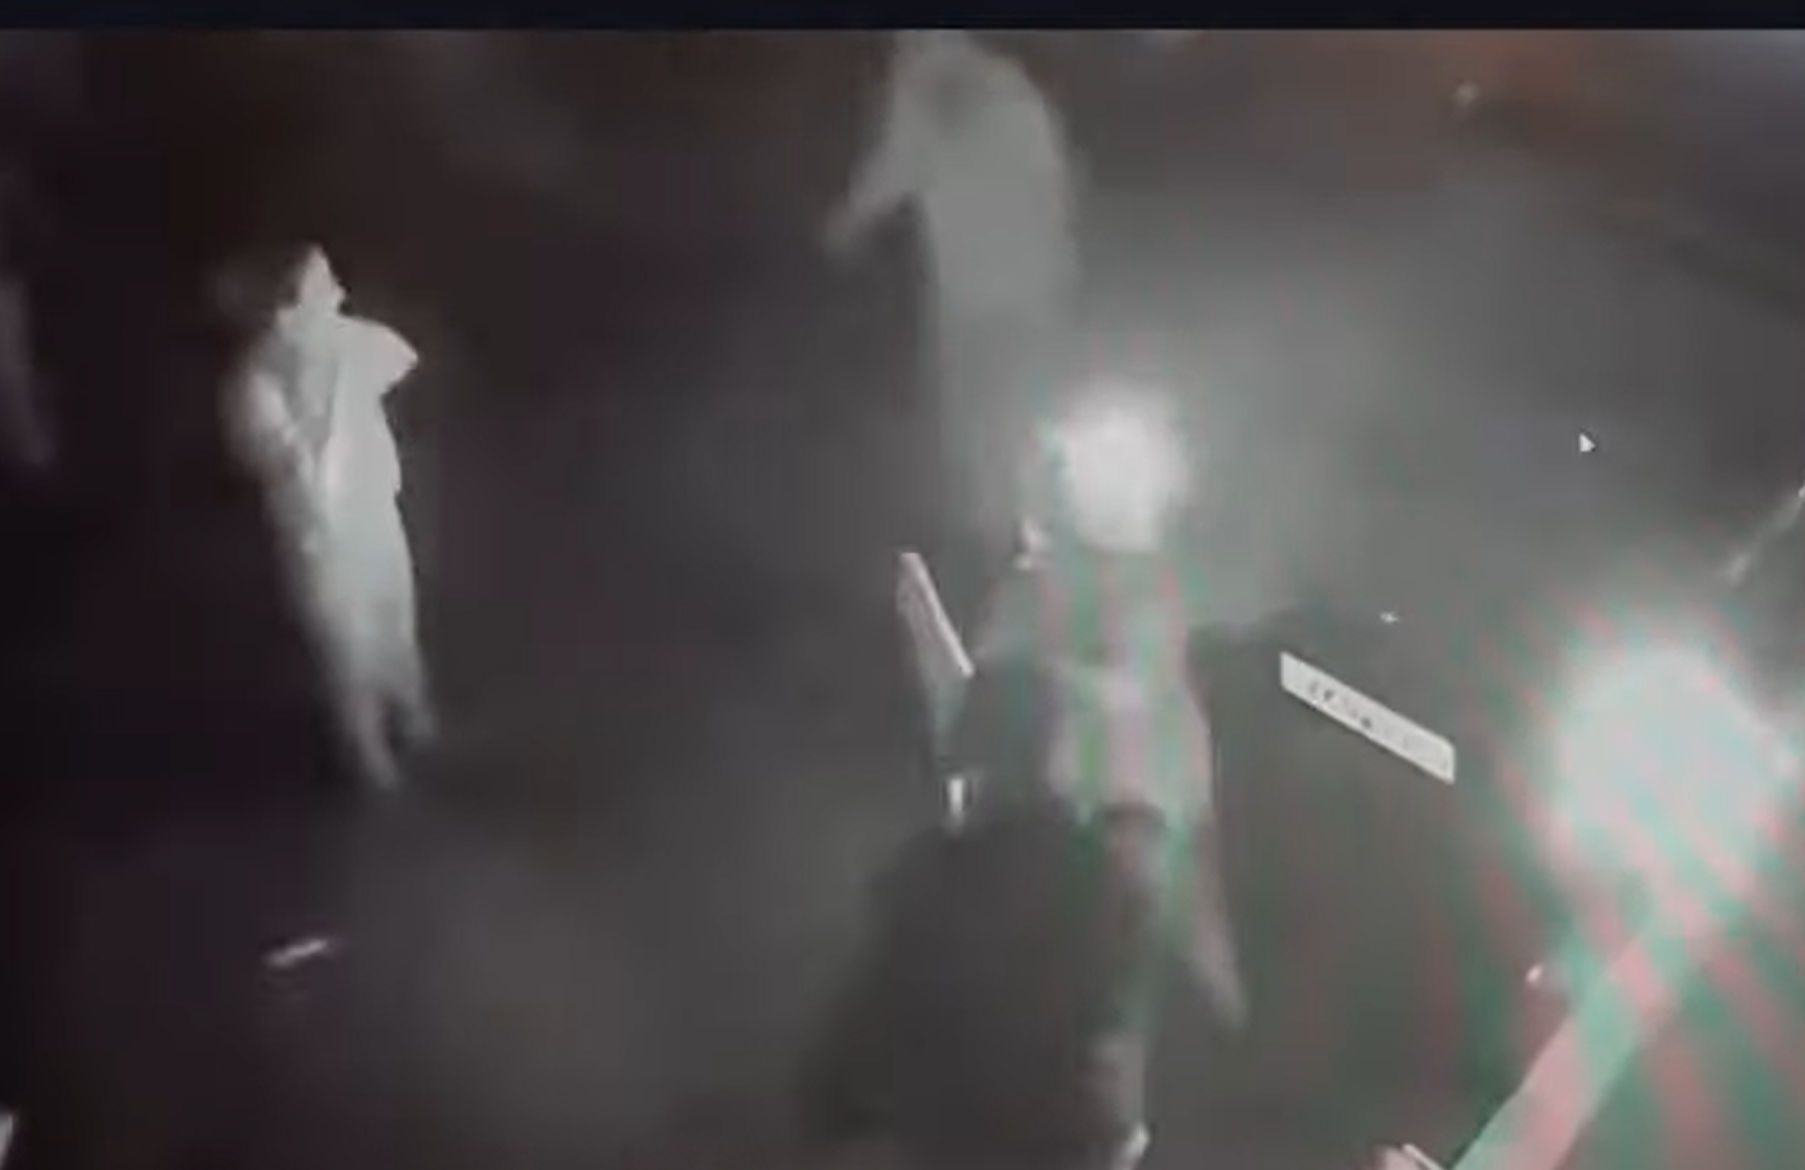 Βίντεο-σοκ από επίθεση με φτυάρι σε δημοτικό υπάλληλο – Τον έριξαν και τον χτυπούσαν